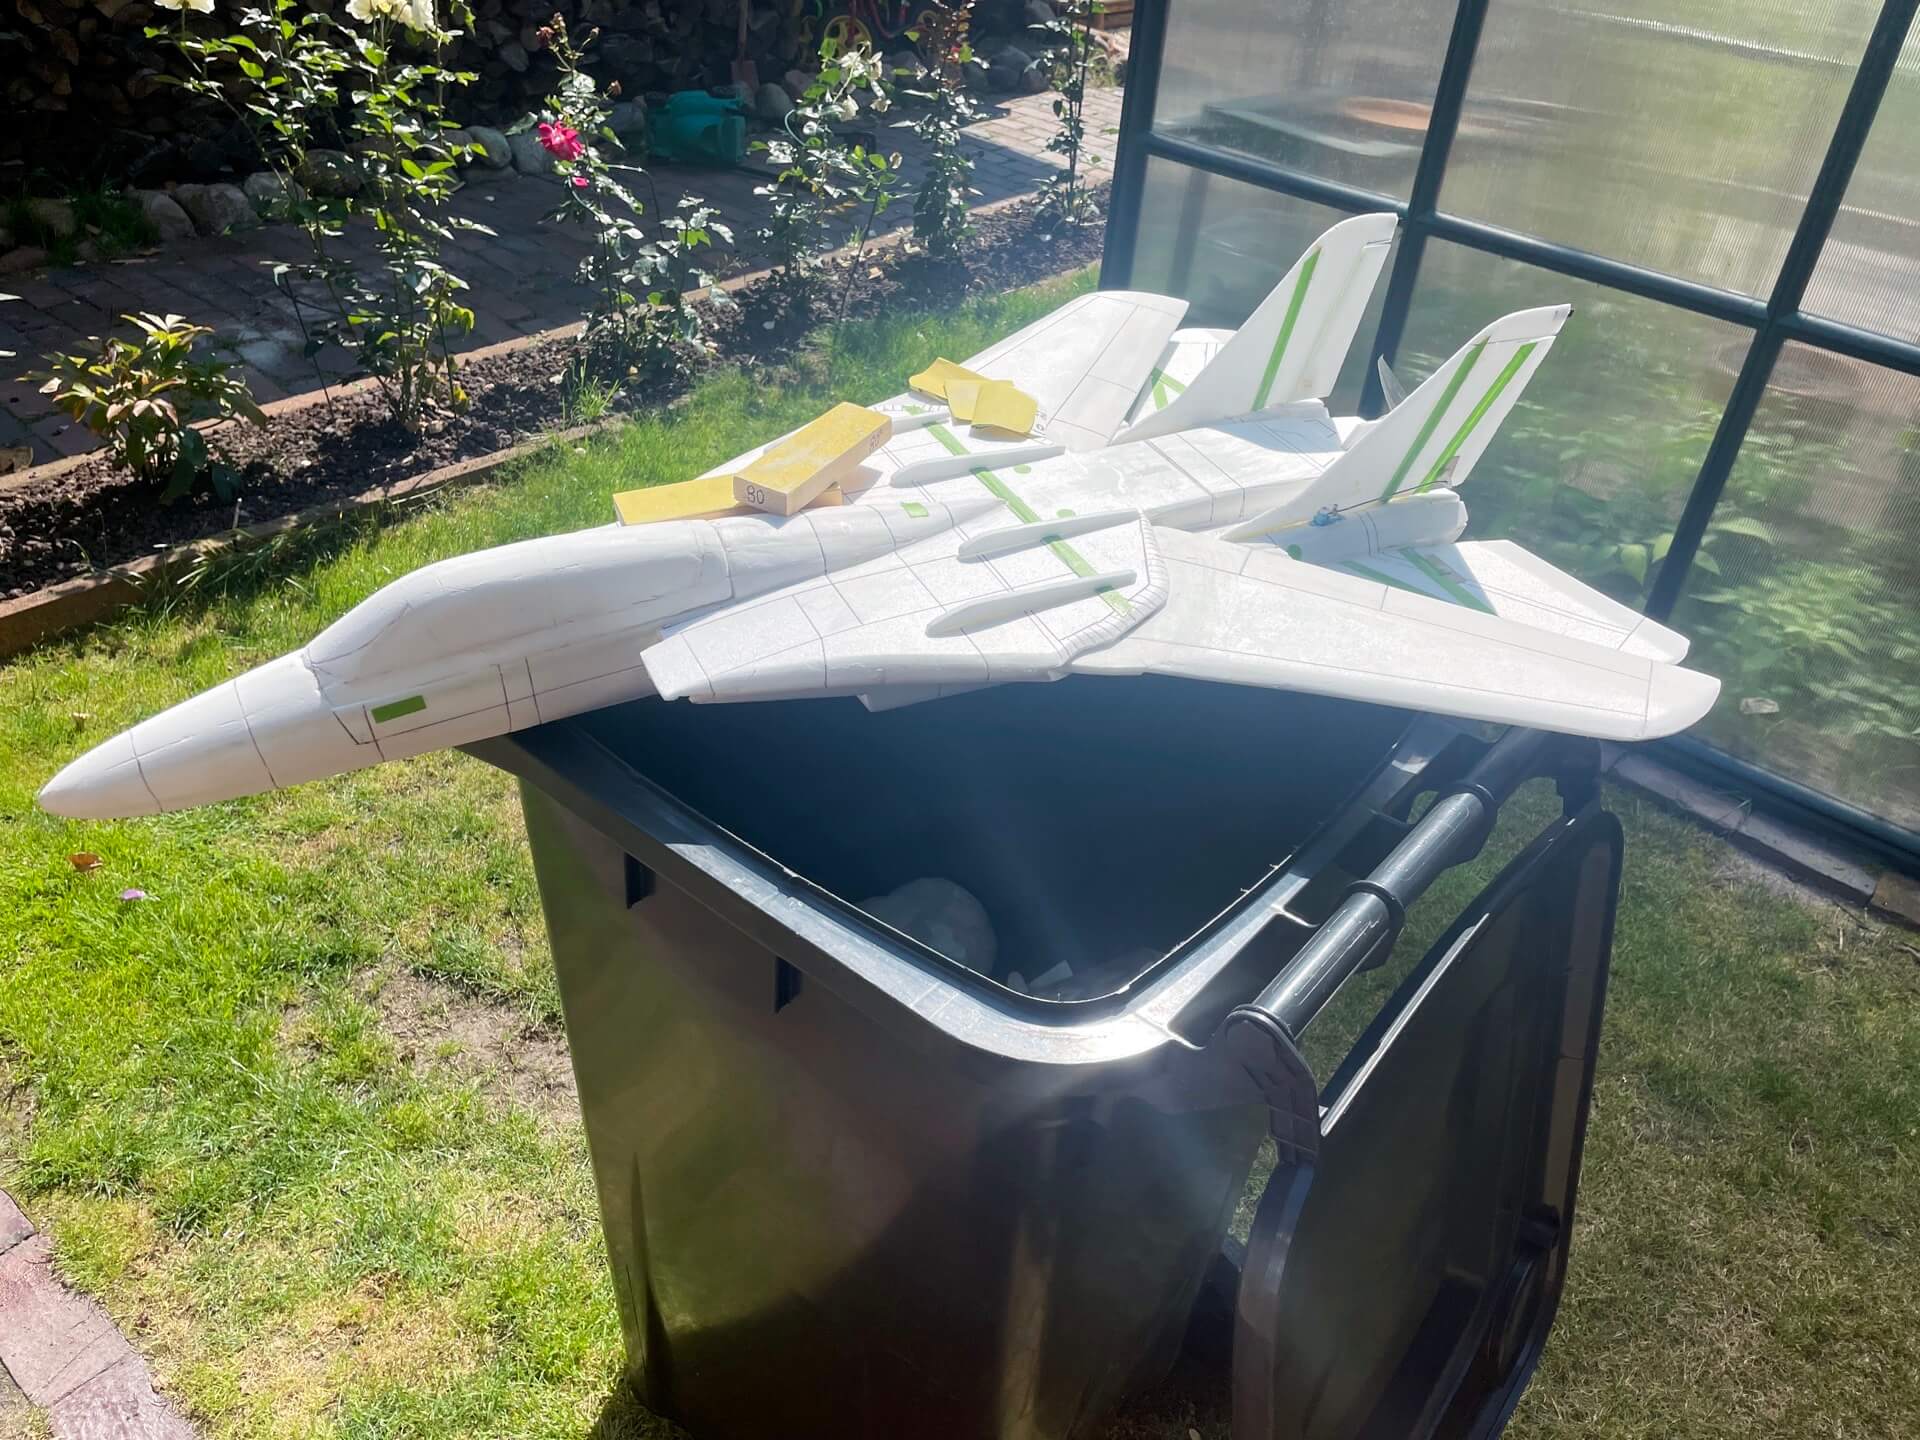 Schleifen einer Depronjet F-14 über der Mülltonnen im eigenen Garten